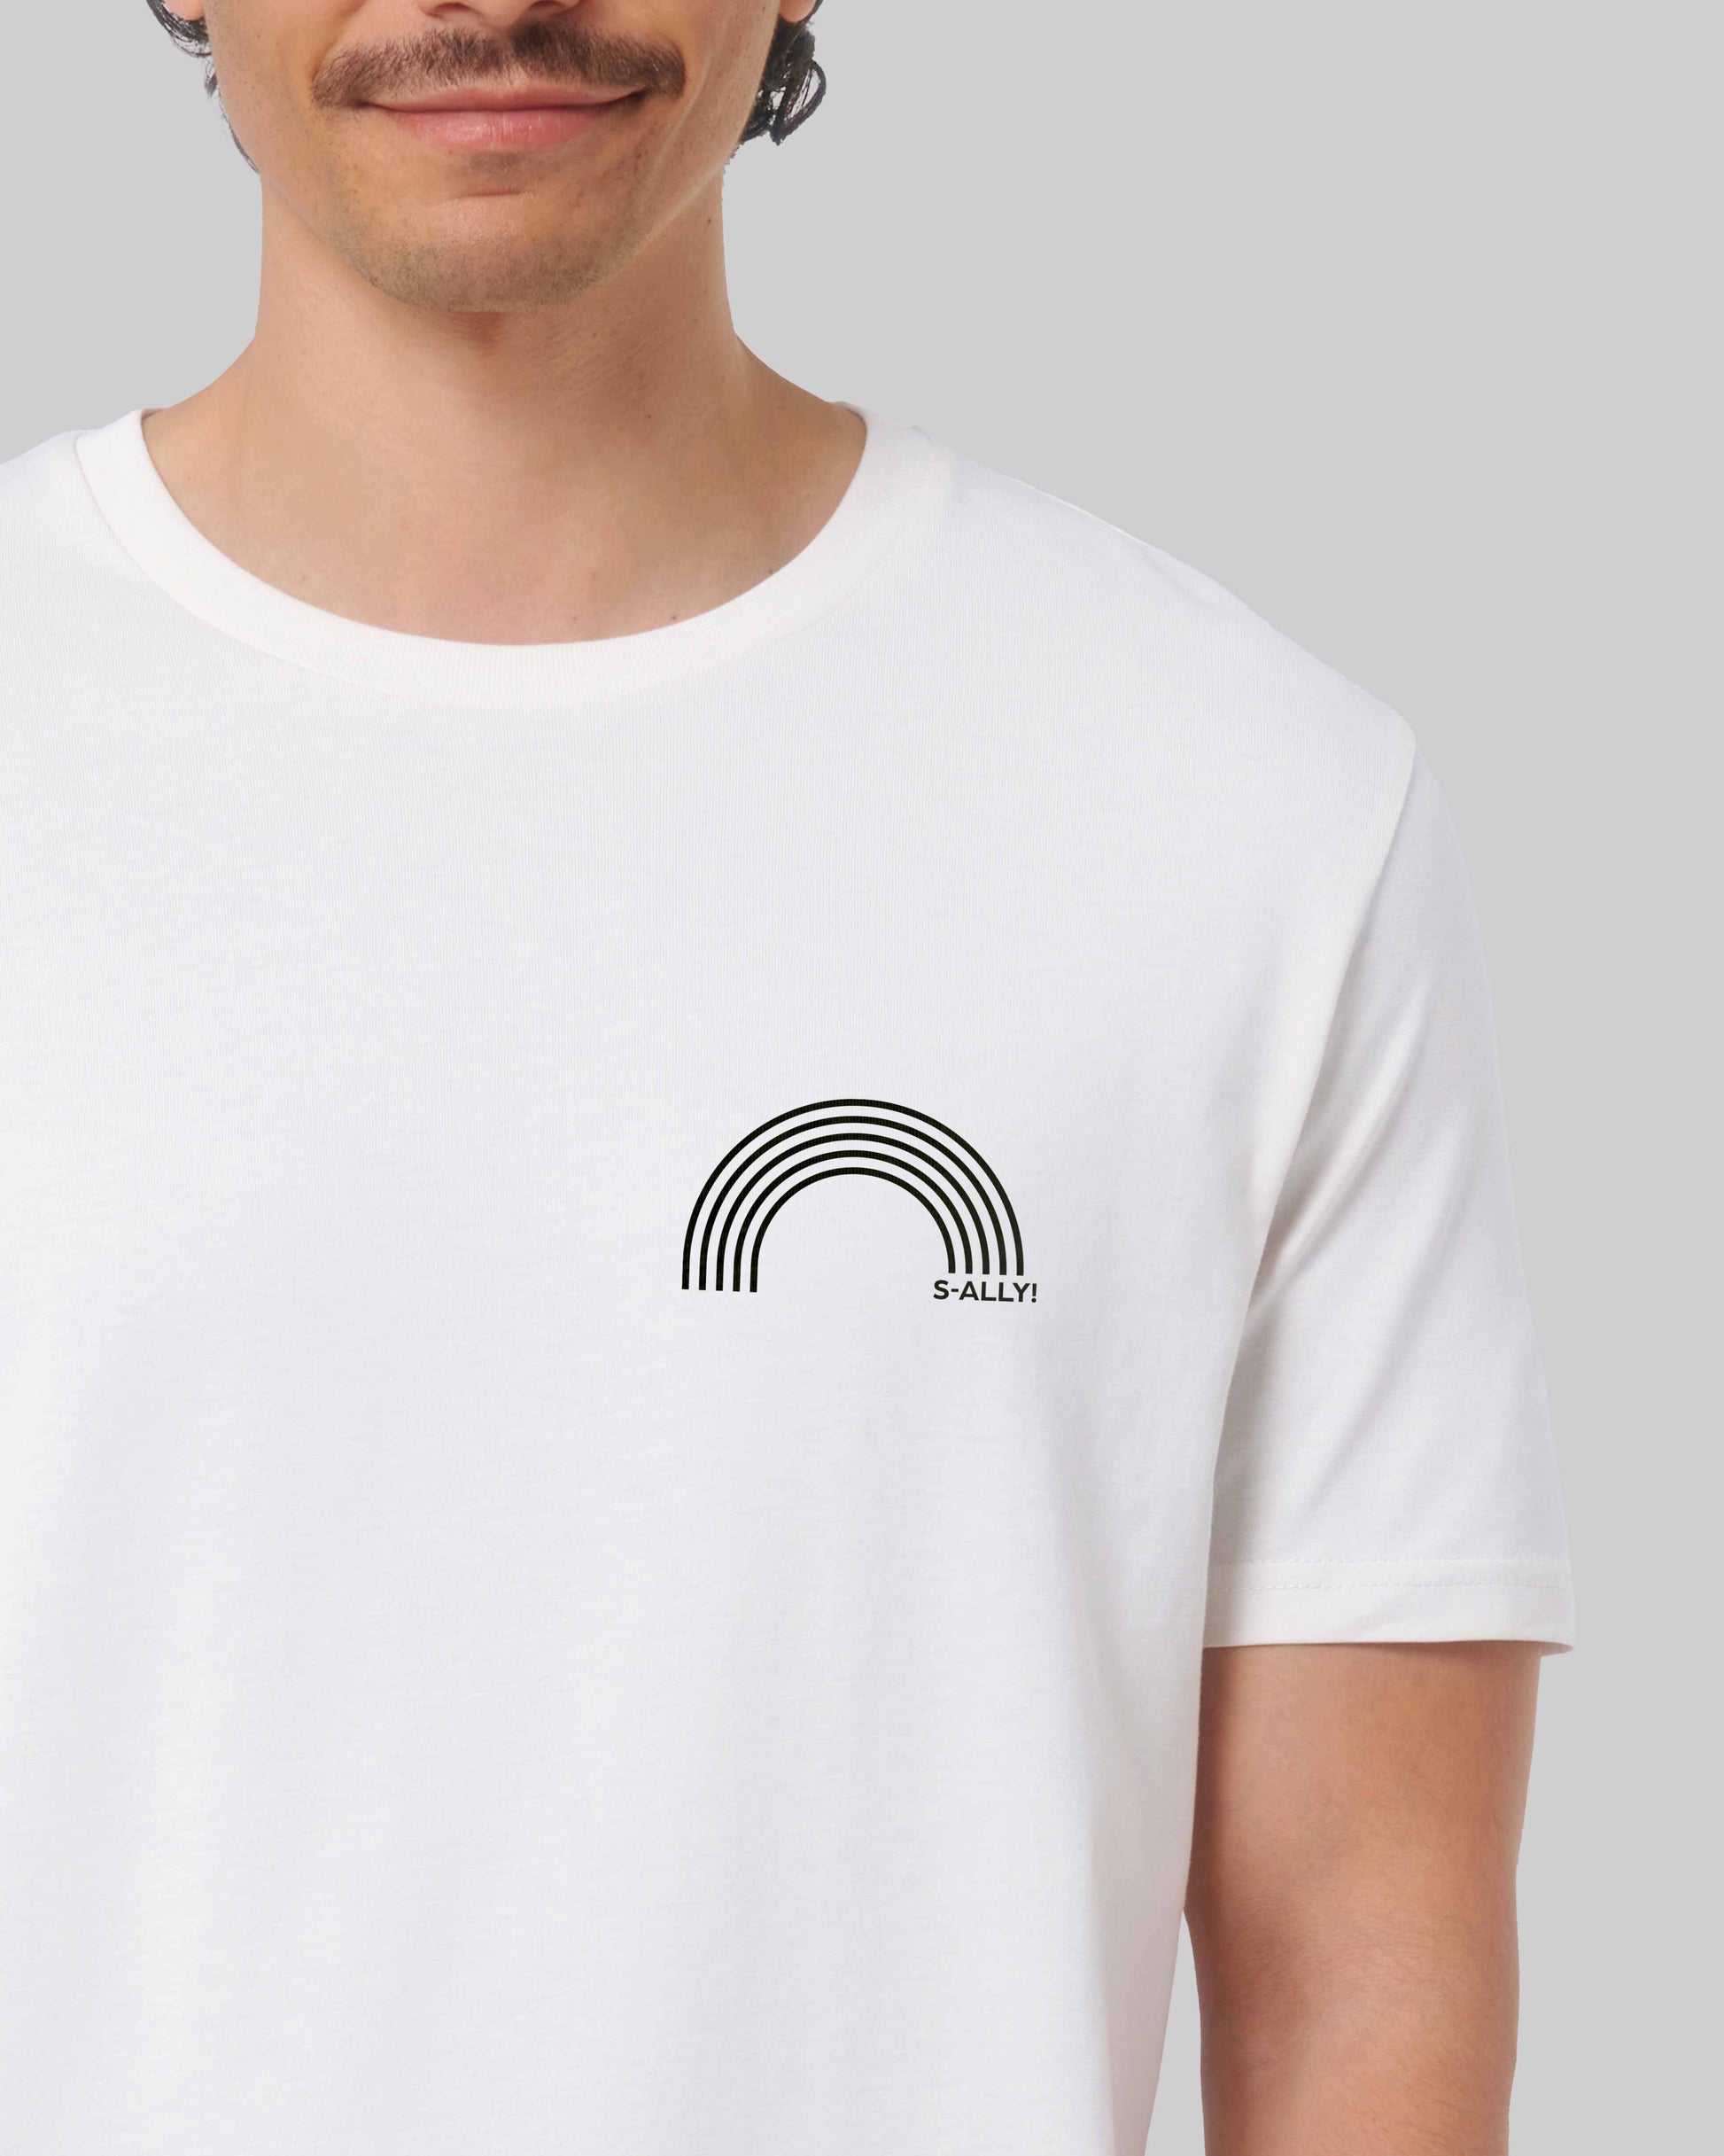 EINHORST® unisex Organic Shirt in Weiß mit dem Motiv "s-ally Regenbogen" in der Kombination schwarzer Regenbogen mit schwarzer Schrift, Bild von männlicher Person mit Shirt